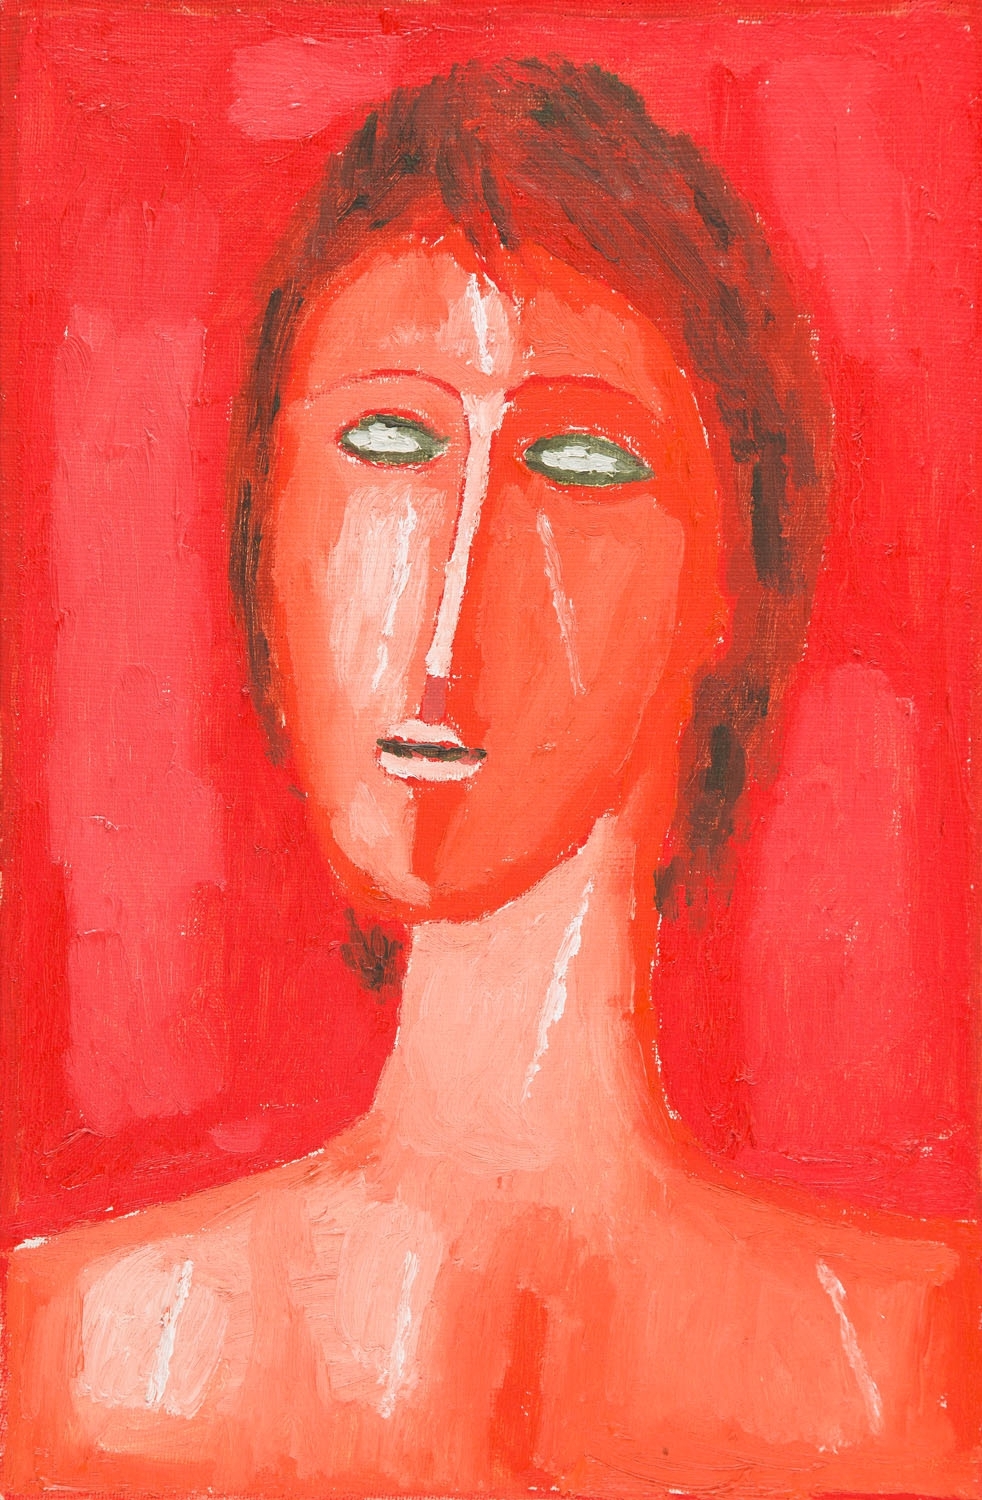 Female portrait by Jerzy Nowosielski, 1986